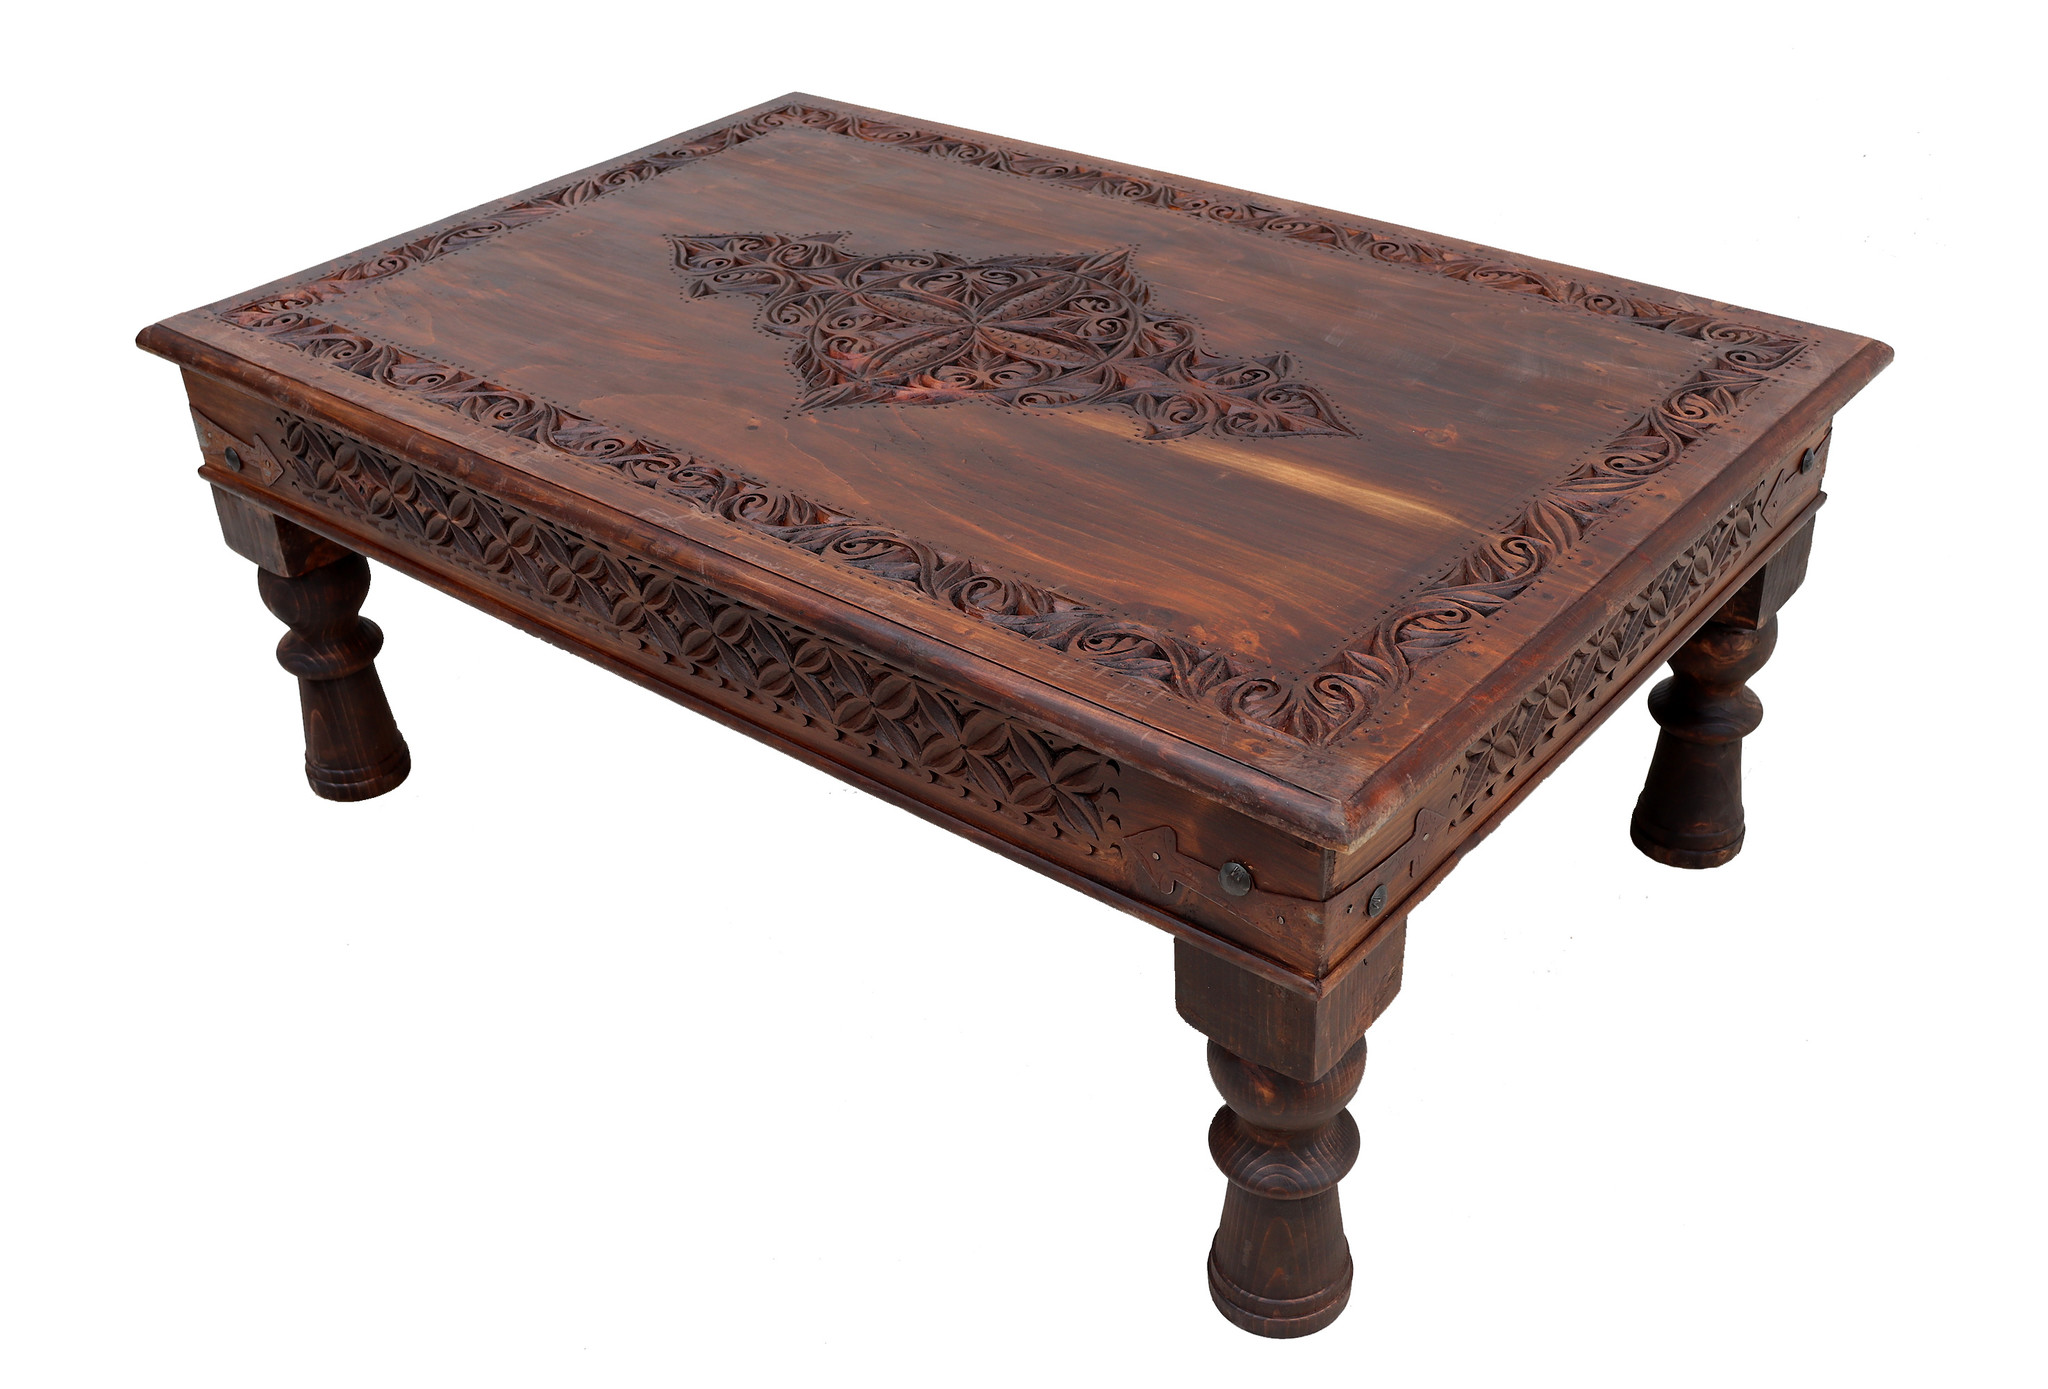 120x80 cm exclusiv Massivholz handgeschnitzte kolonialstil Wohnzimmertisch tischtruhe Tisch Couchtisch aus Afghanistan Nuristan Nr:23NUR